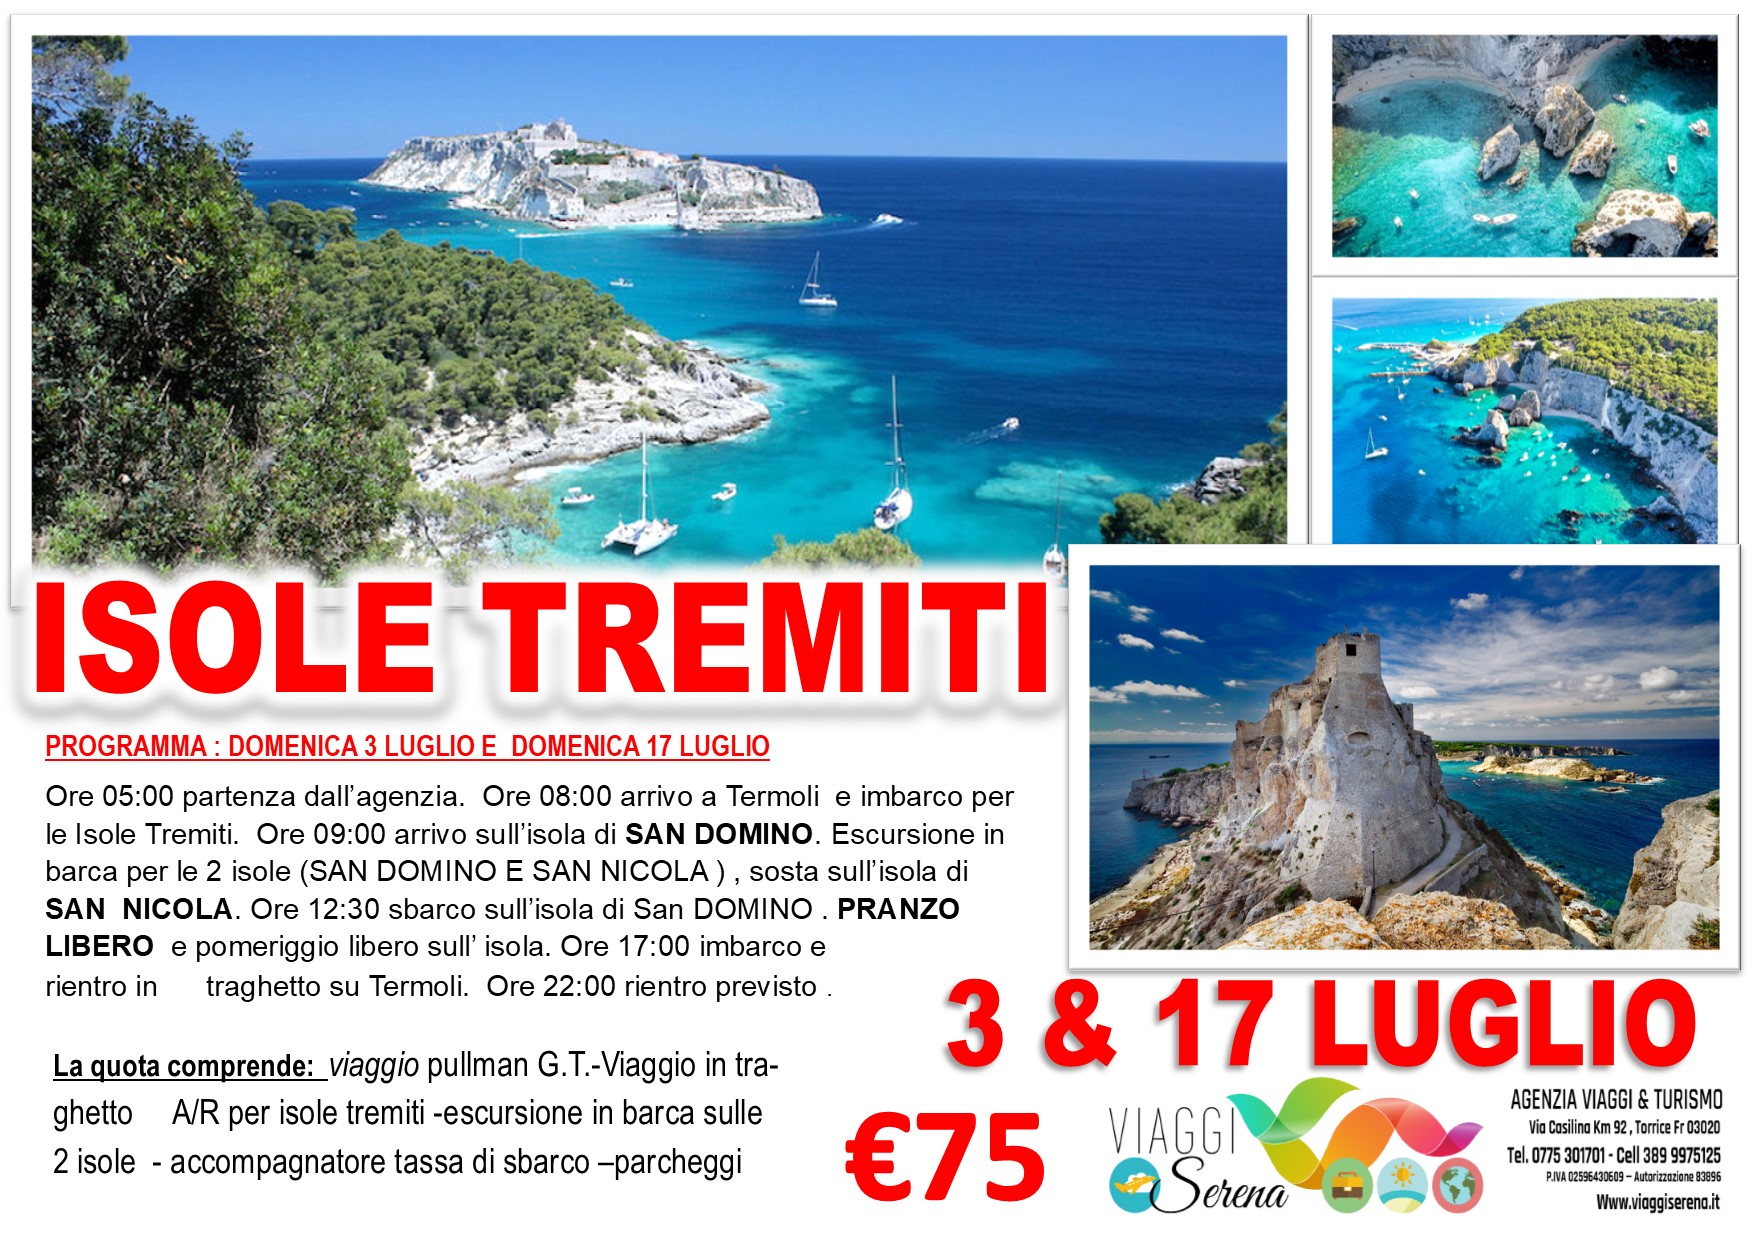 Viaggi di Gruppo: Isole Tremiti, San Domino & San Nicola 17 Luglio € 75,00